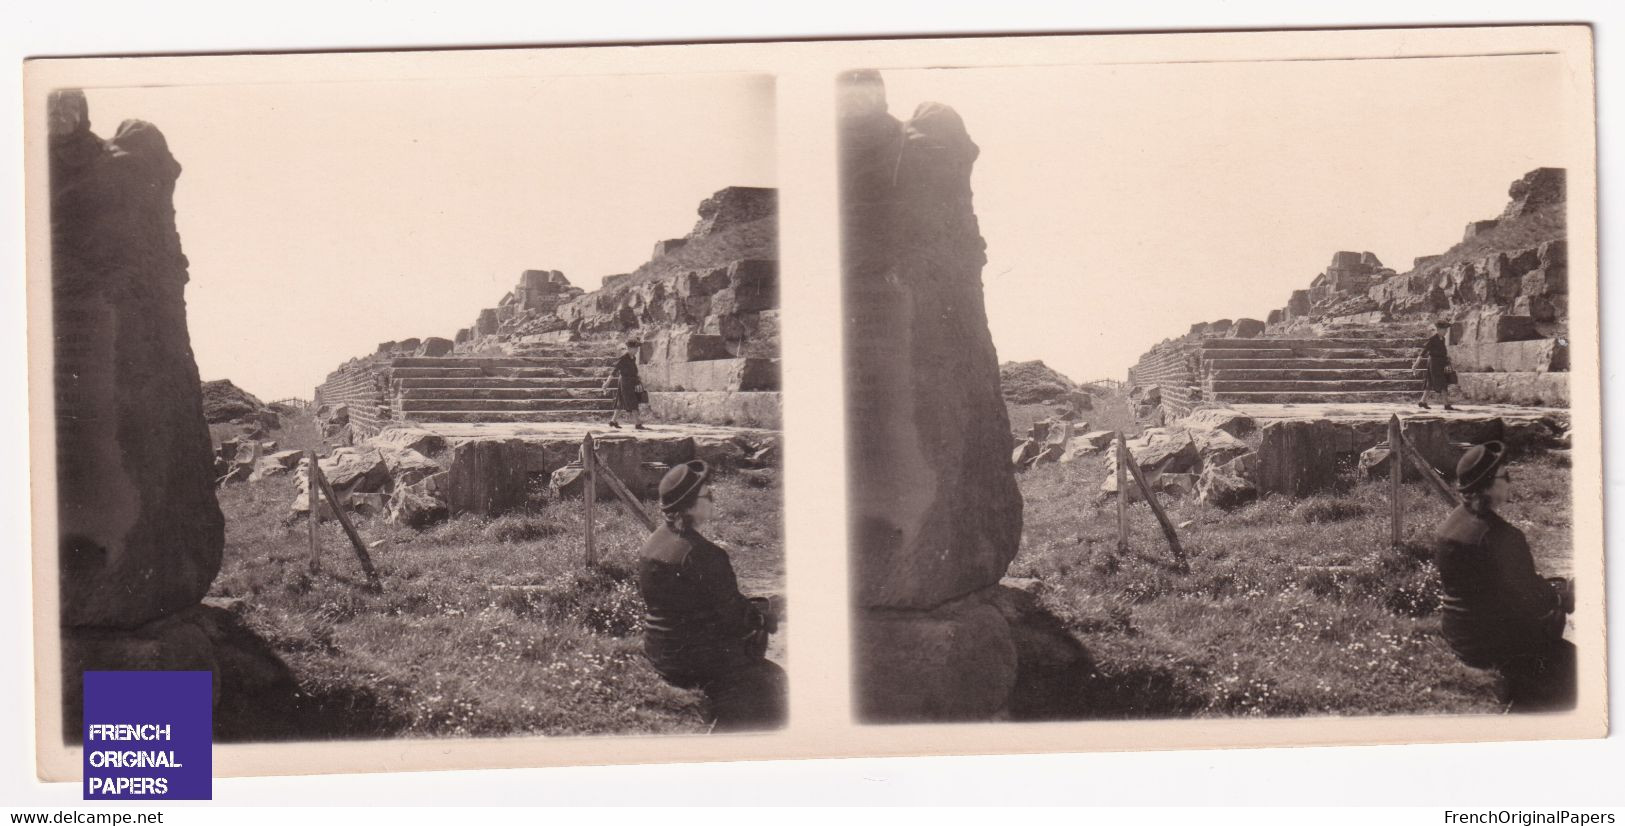 Sommet Puy De Dôme 1940s Photo Stéréoscopique 12,8x5,8cm Ruines Gallo-Romaines Et Temple De Mercure Orcines A70-64 - Stereoscopic